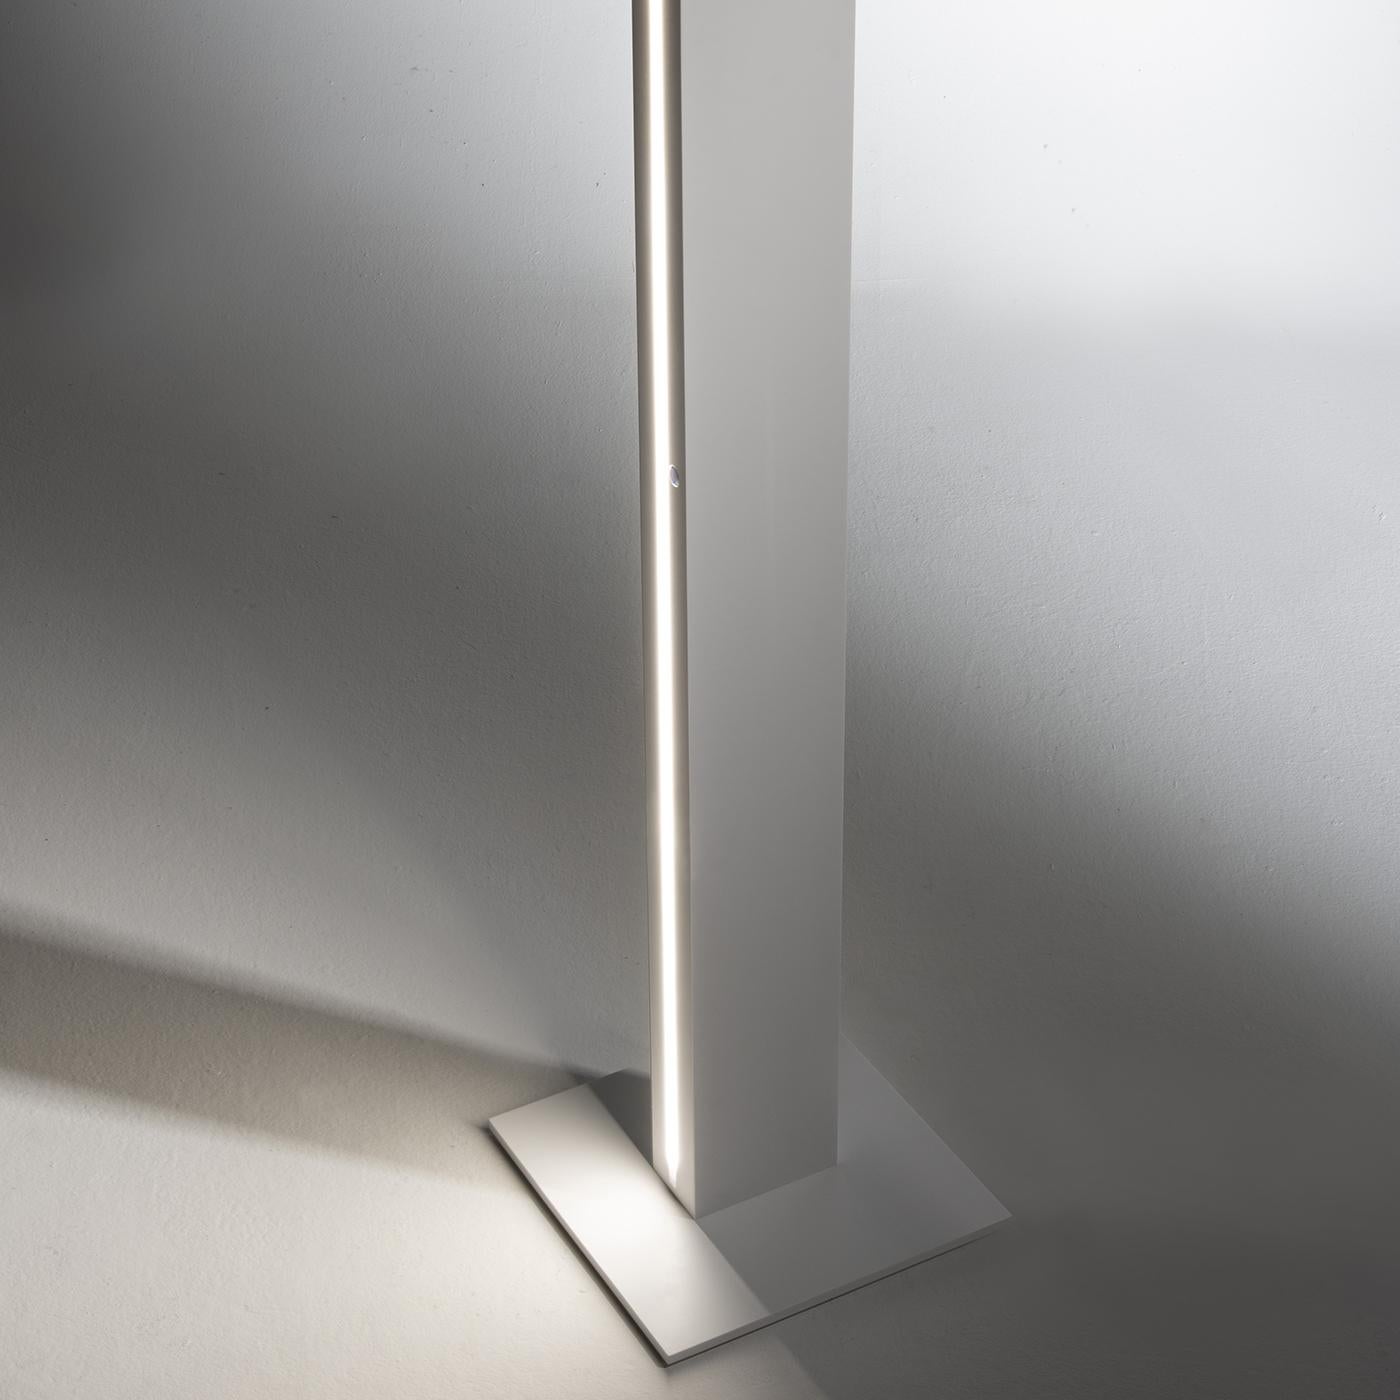 Italian Monolight Floor Lamp by Luciano Pasut